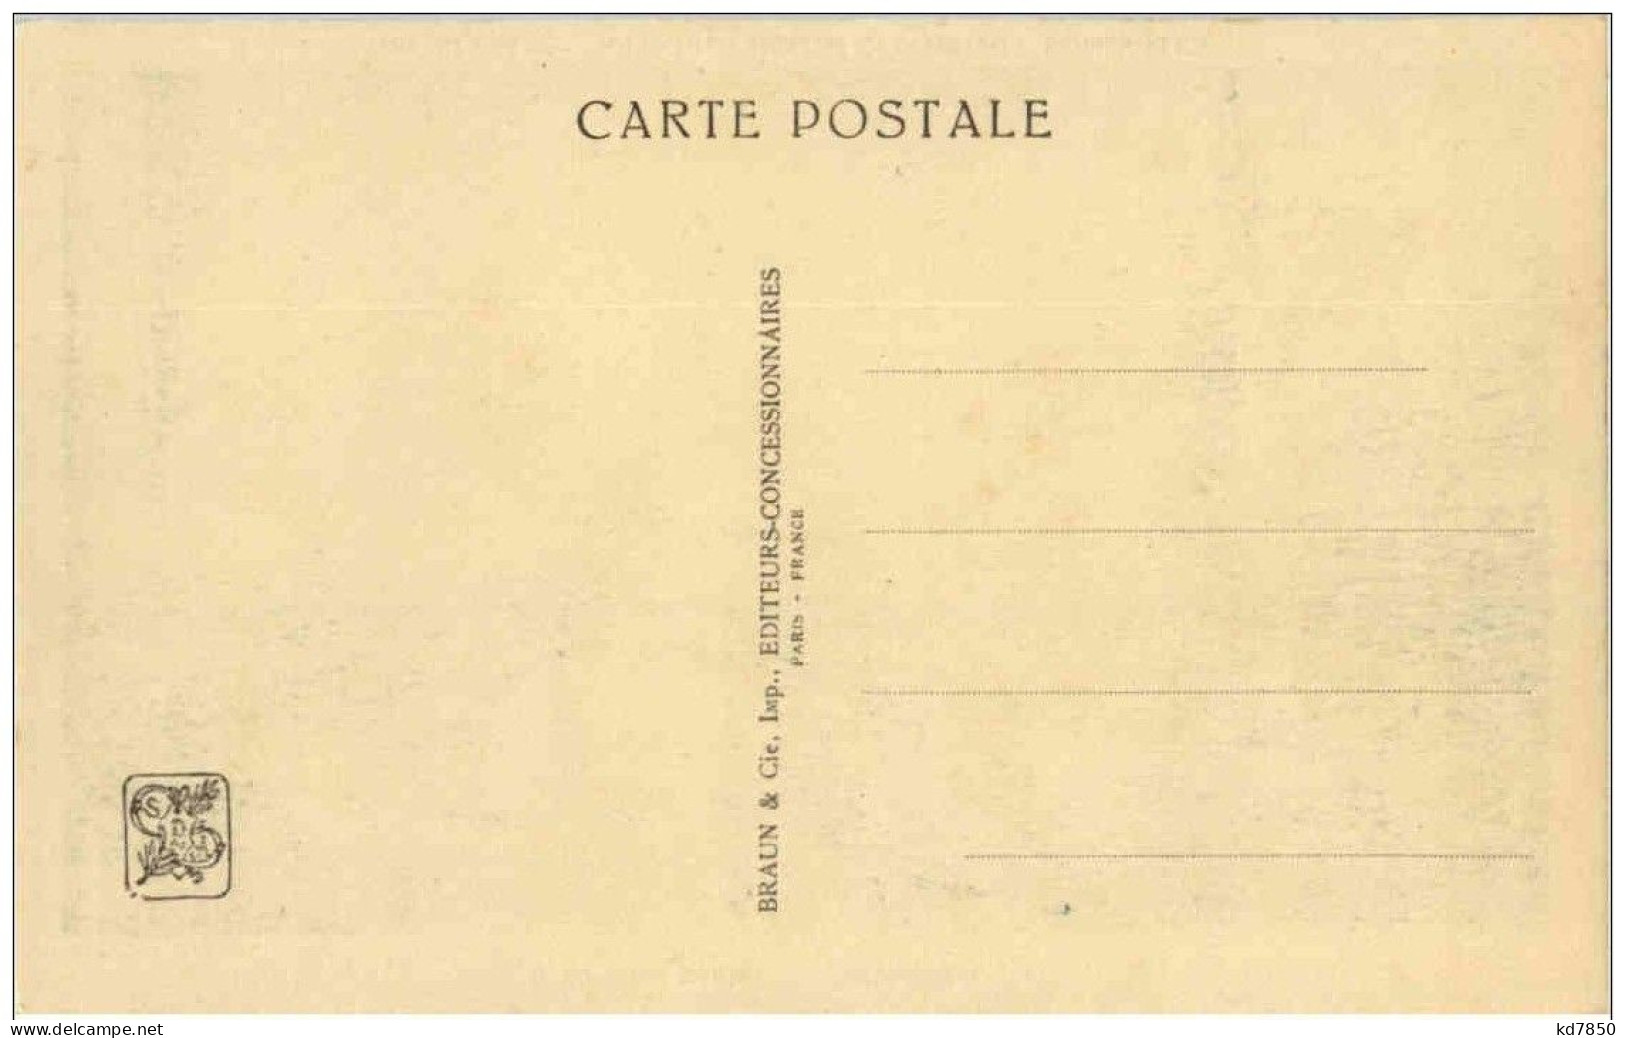 Paris - Exposition Coloniale Internationale 1931 - Exhibitions